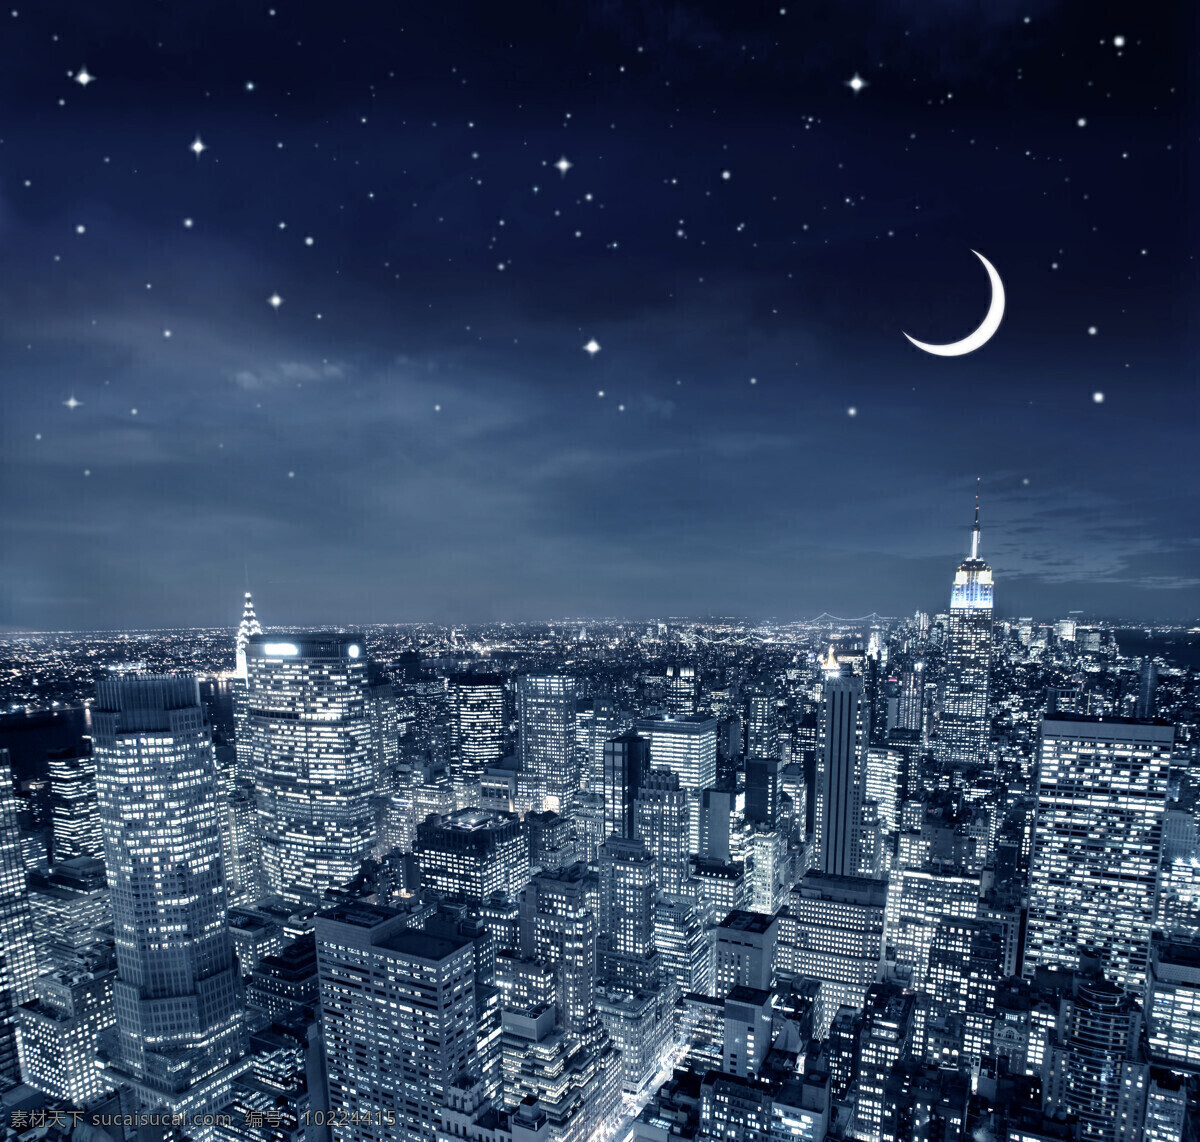 美丽 城市 夜景 星空图片 美丽星空 月亮 城市夜景 纽约夜景 纽约风景 城市风景 高楼大厦 纽约鸟瞰图 城市建筑 美丽风景 城市风光 环境家居